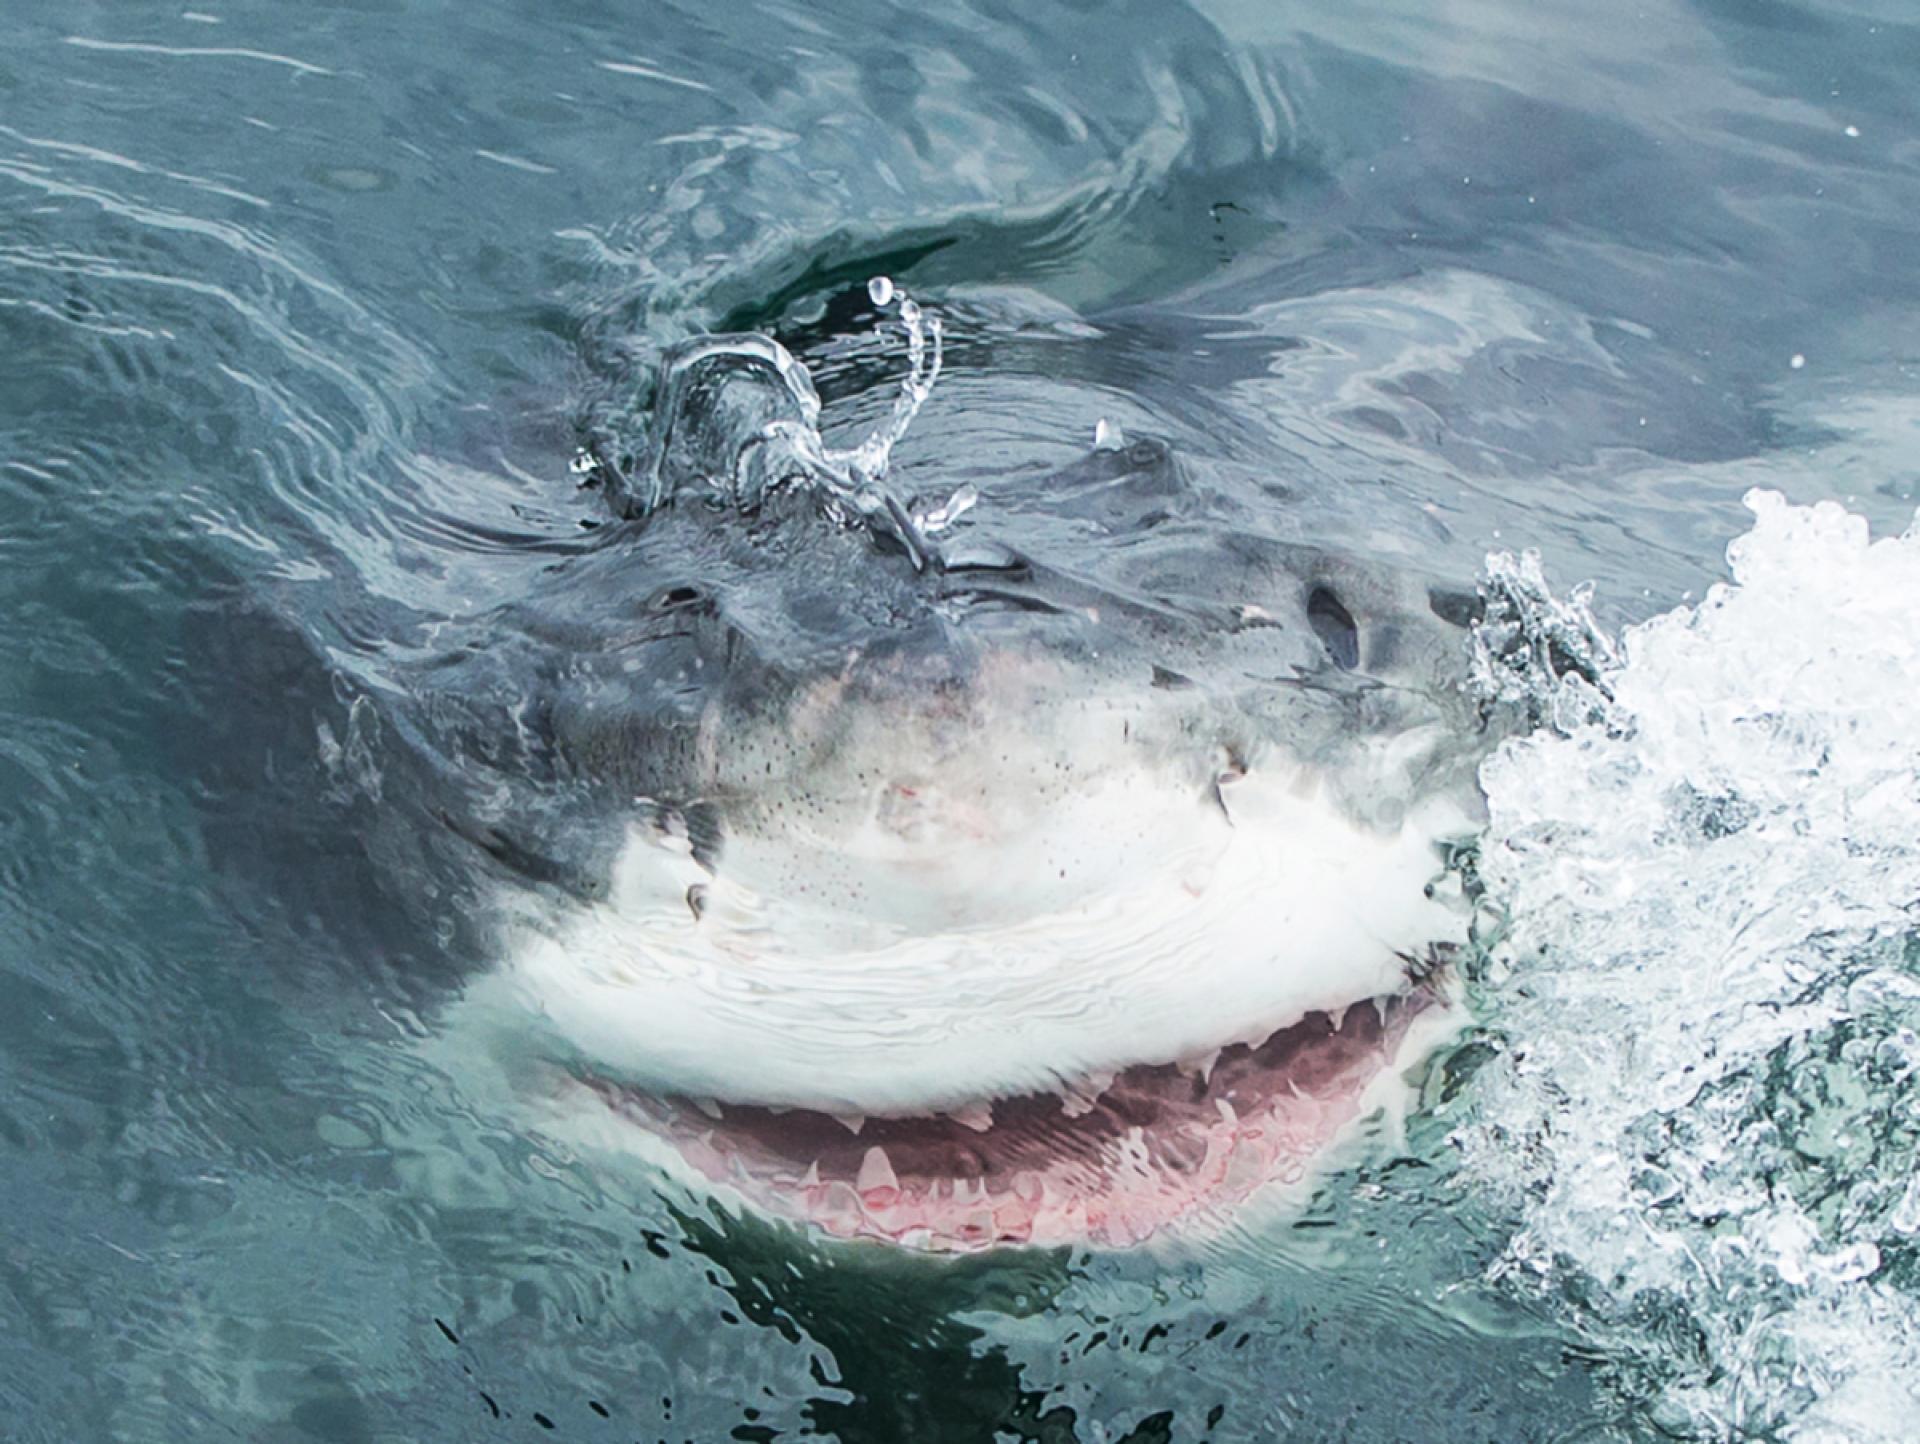 London Photography Awards Winner - The White Shark